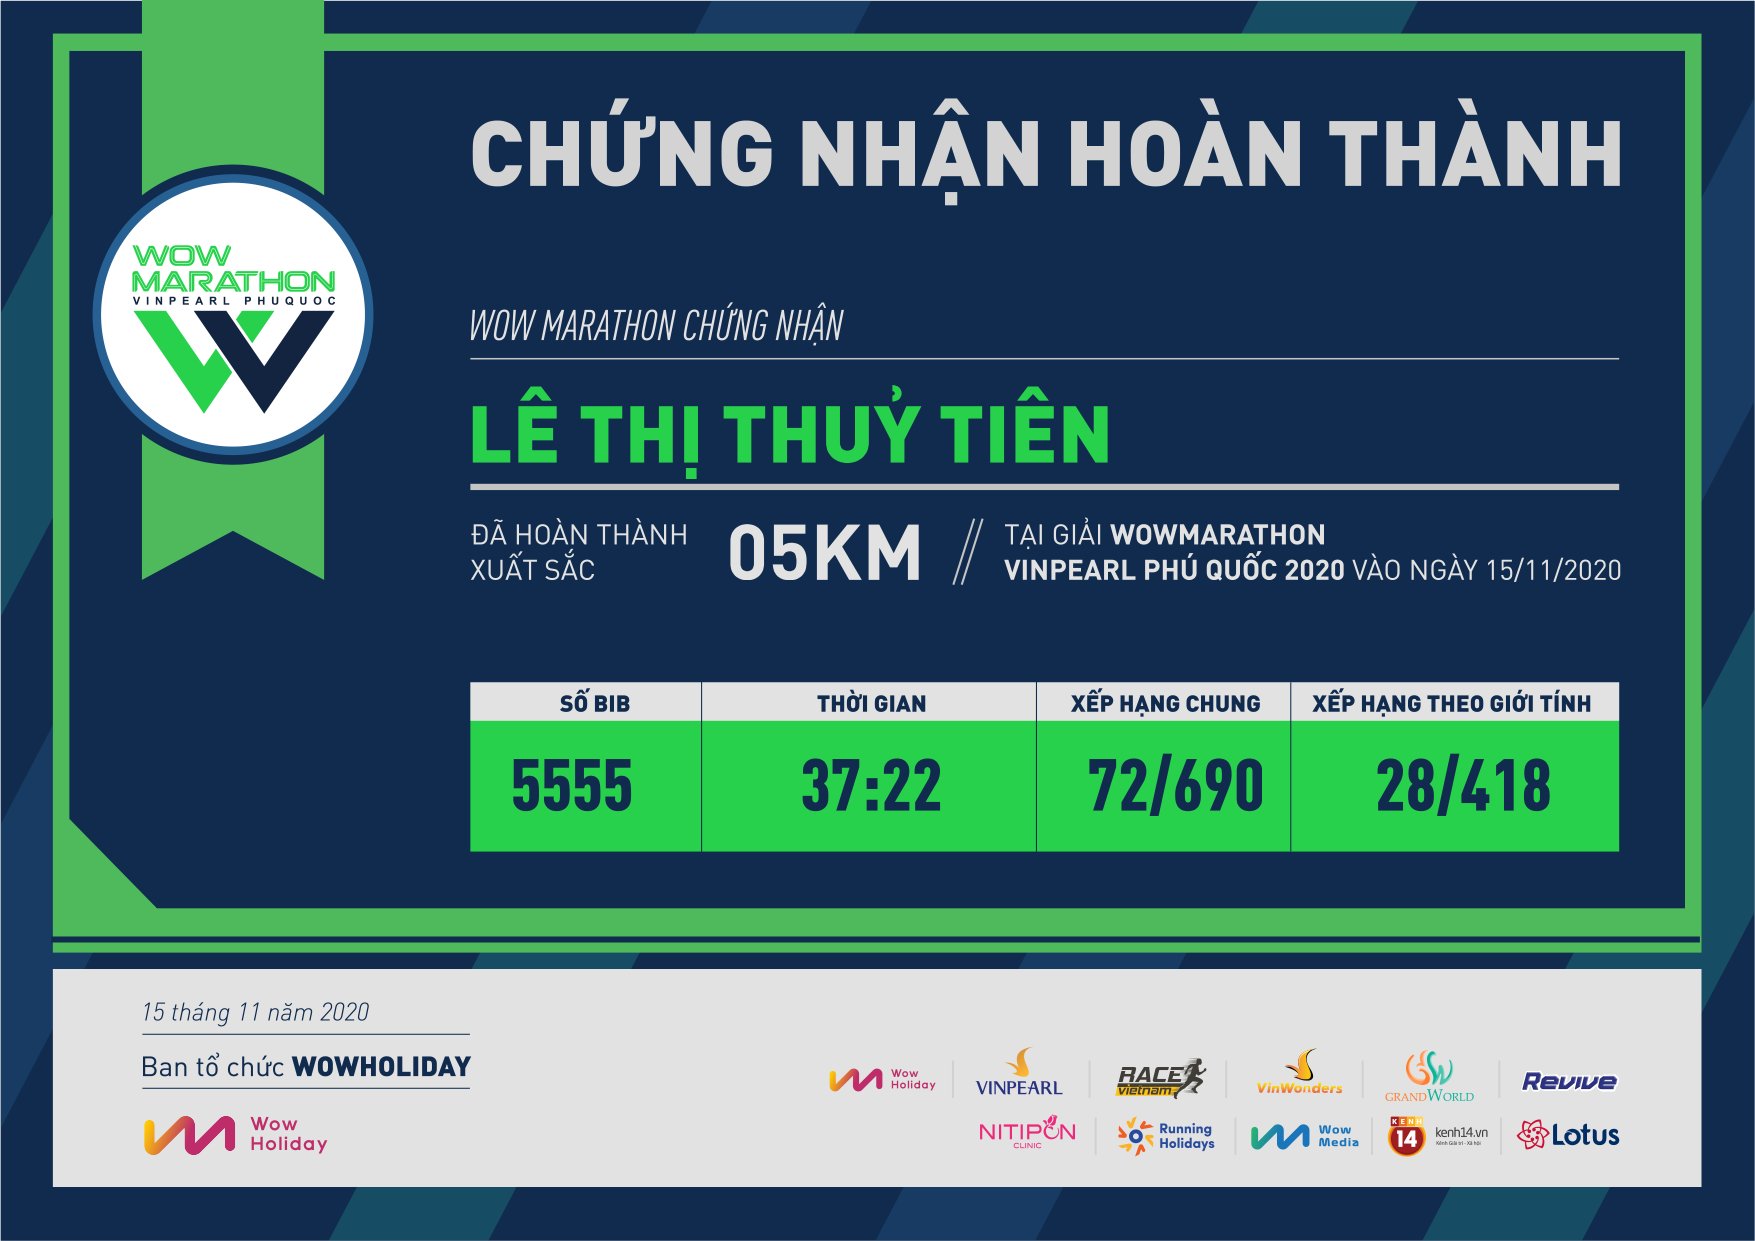 5555 - Lê Thị Thuỷ Tiên